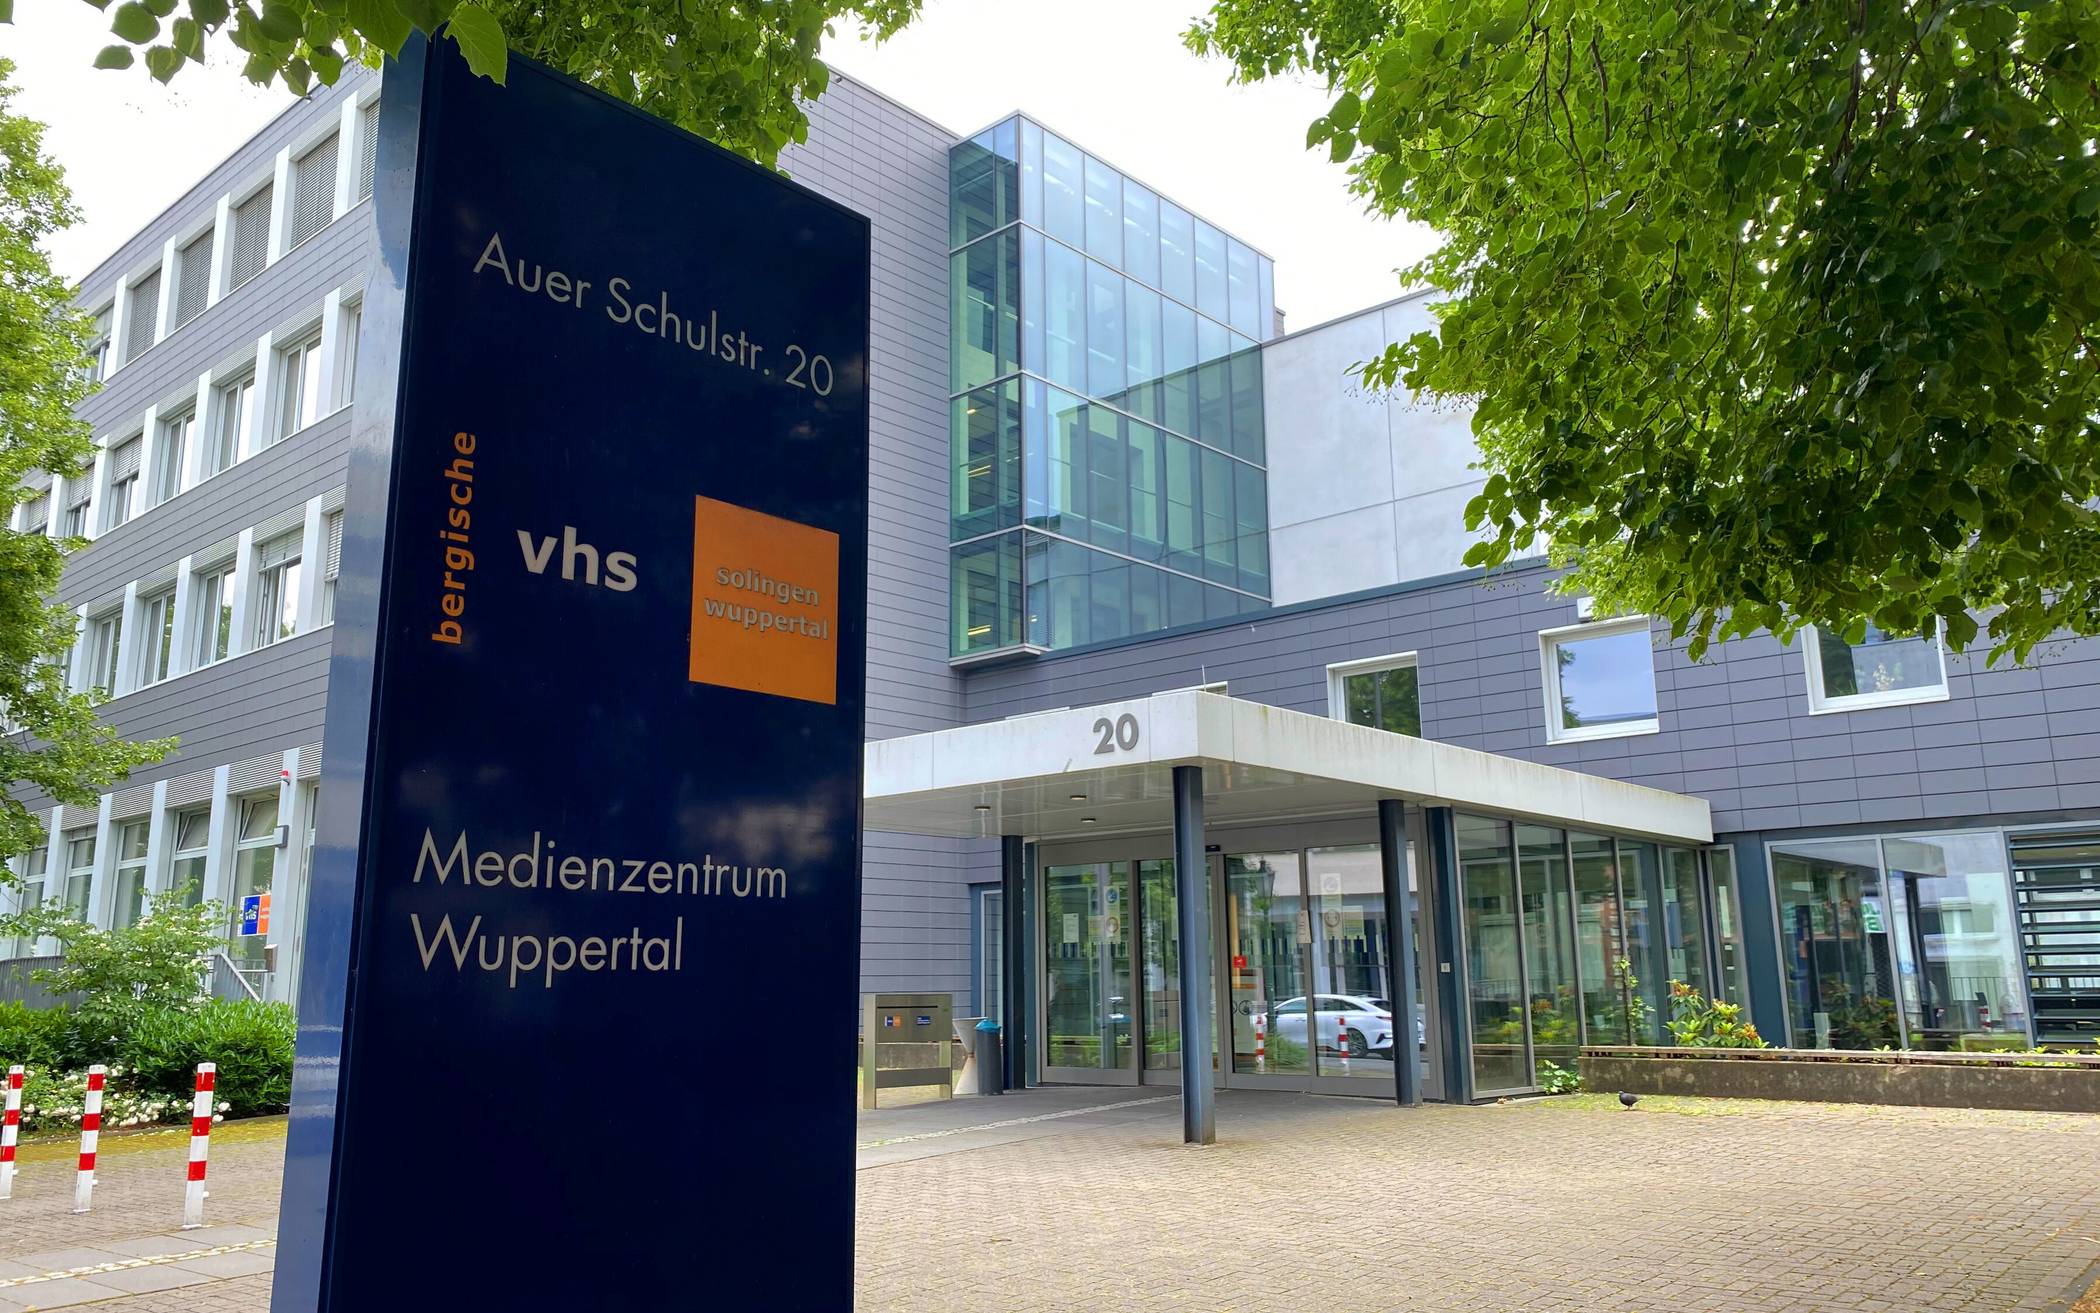 Das Wuppertaler VHS-Gebäude an der Auer